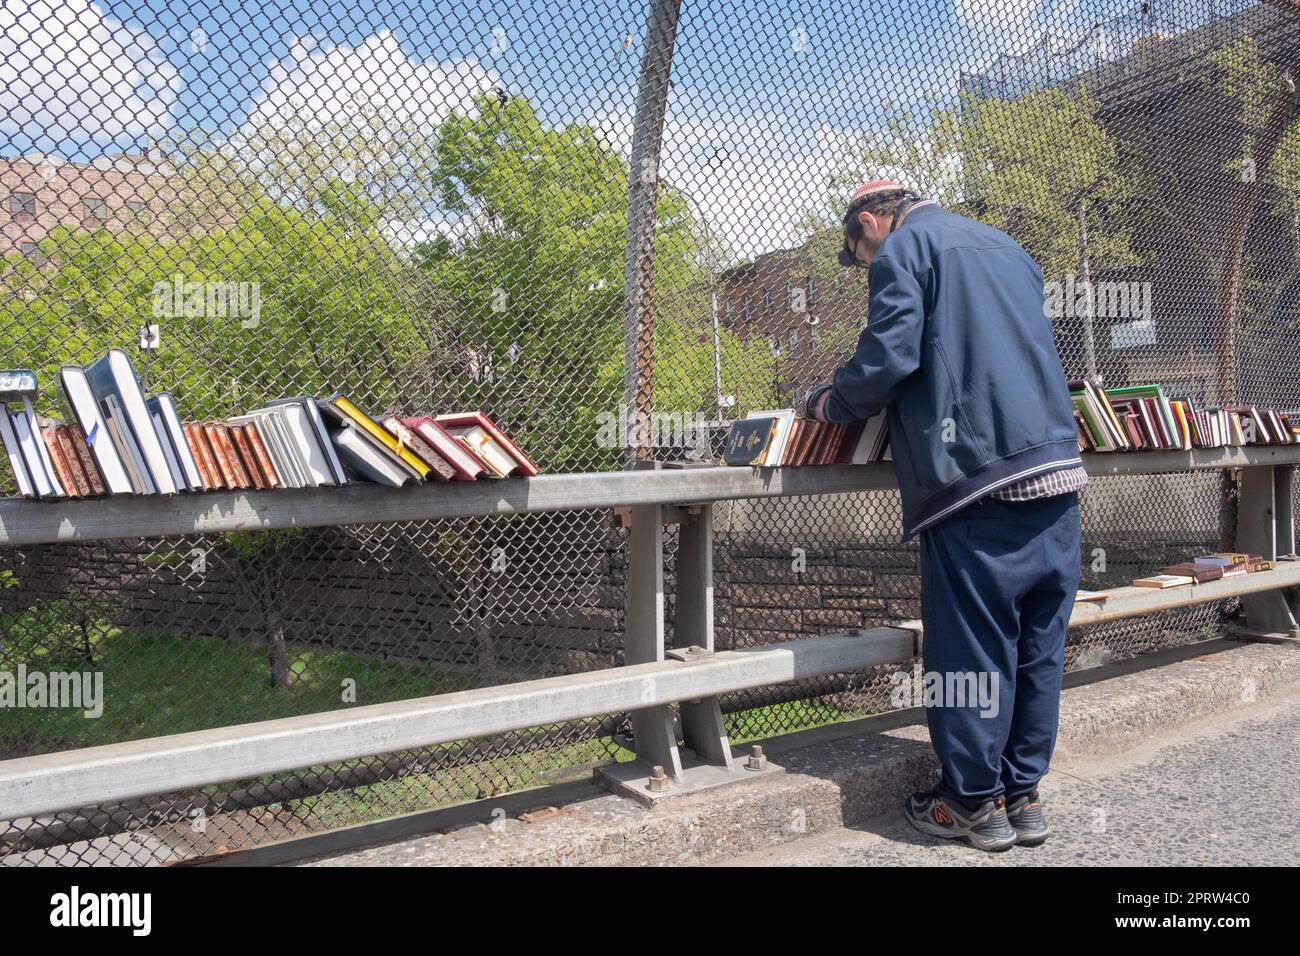 Un juif orthodoxe qui vend des livres religieux récite ses prières du matin tout en portant la téfiline (phylactères). Vue sur le BQE à New York. Banque D'Images